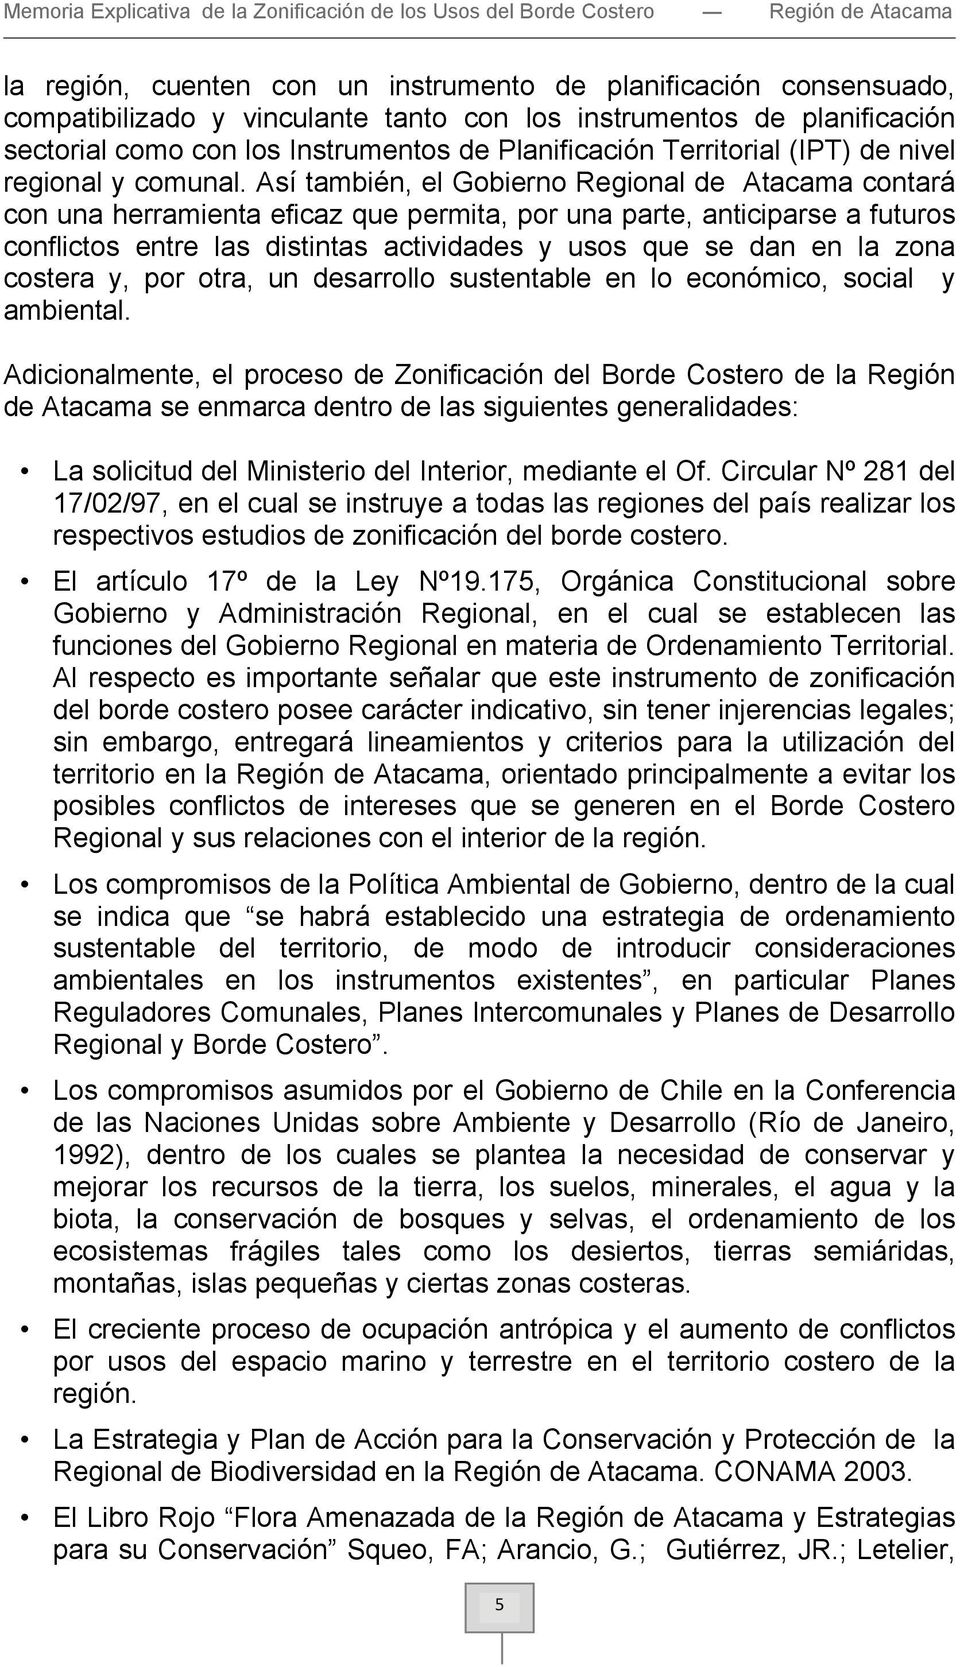 Así también, el Gobierno Regional de Atacama contará con una herramienta eficaz que permita, por una parte, anticiparse a futuros conflictos entre las distintas actividades y usos que se dan en la